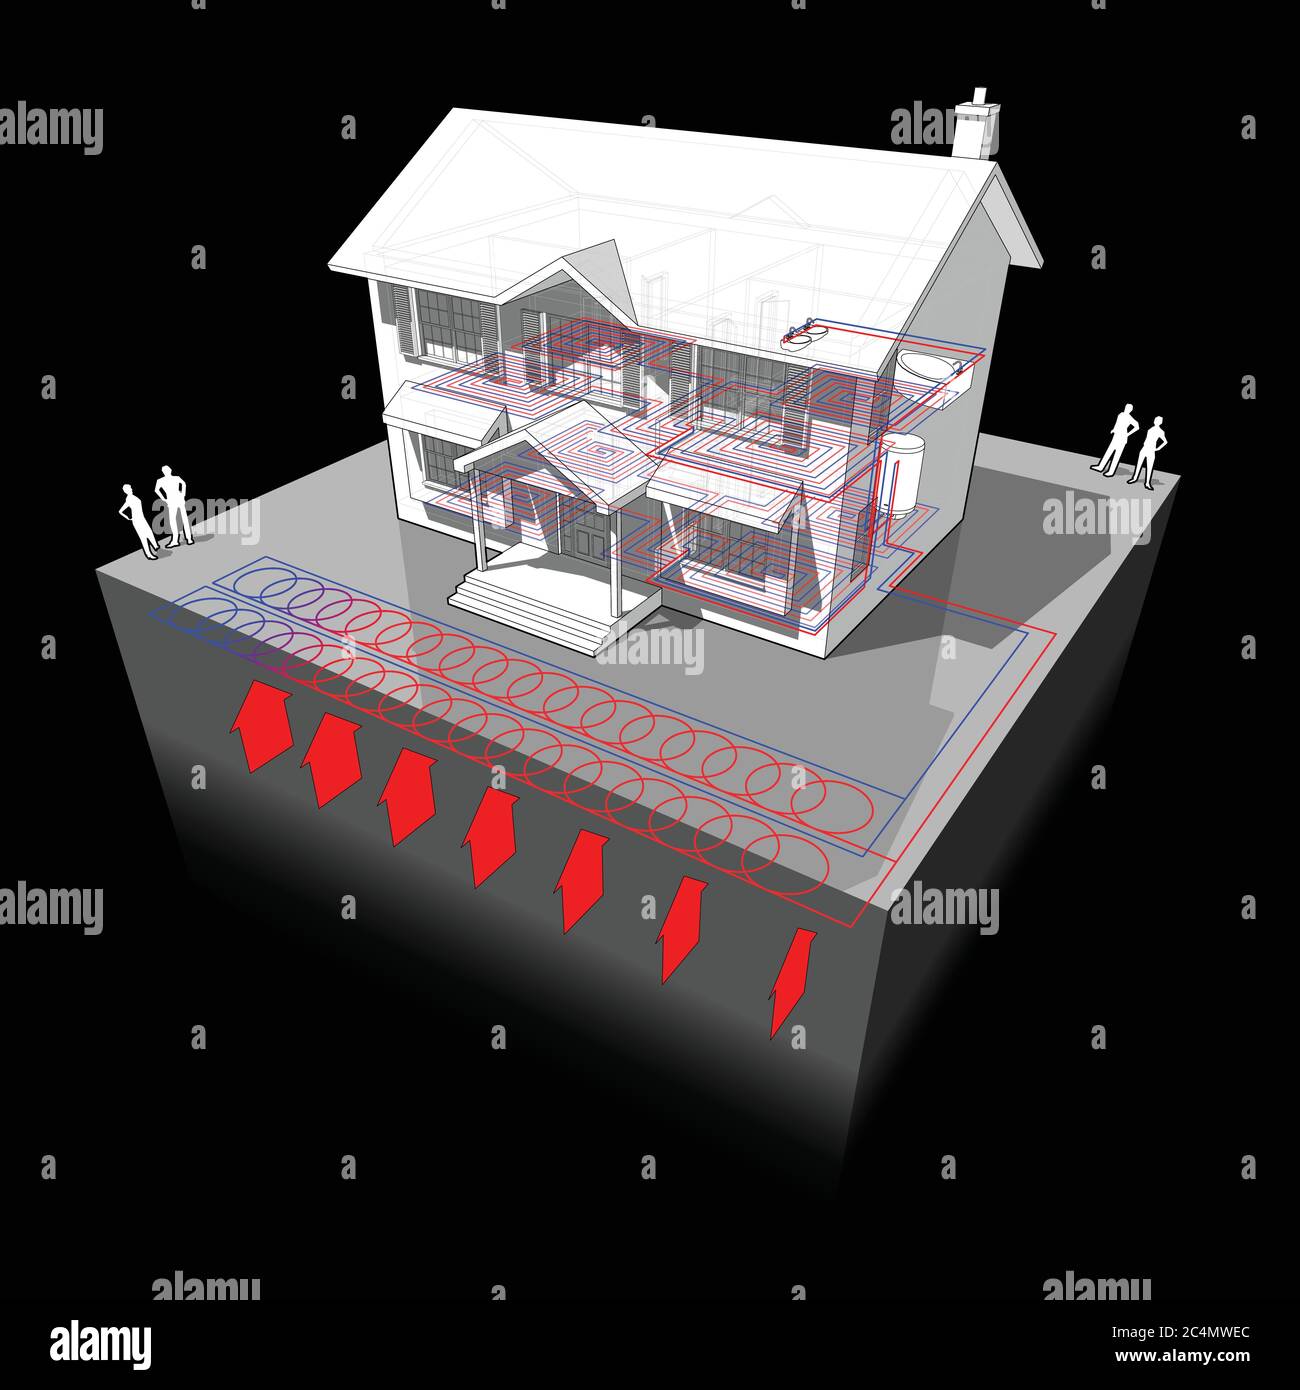 diagramma di una casa coloniale classica con pompa di calore di fonte di terra planare o anello slinky come fonte di energia per il riscaldamento Illustrazione Vettoriale